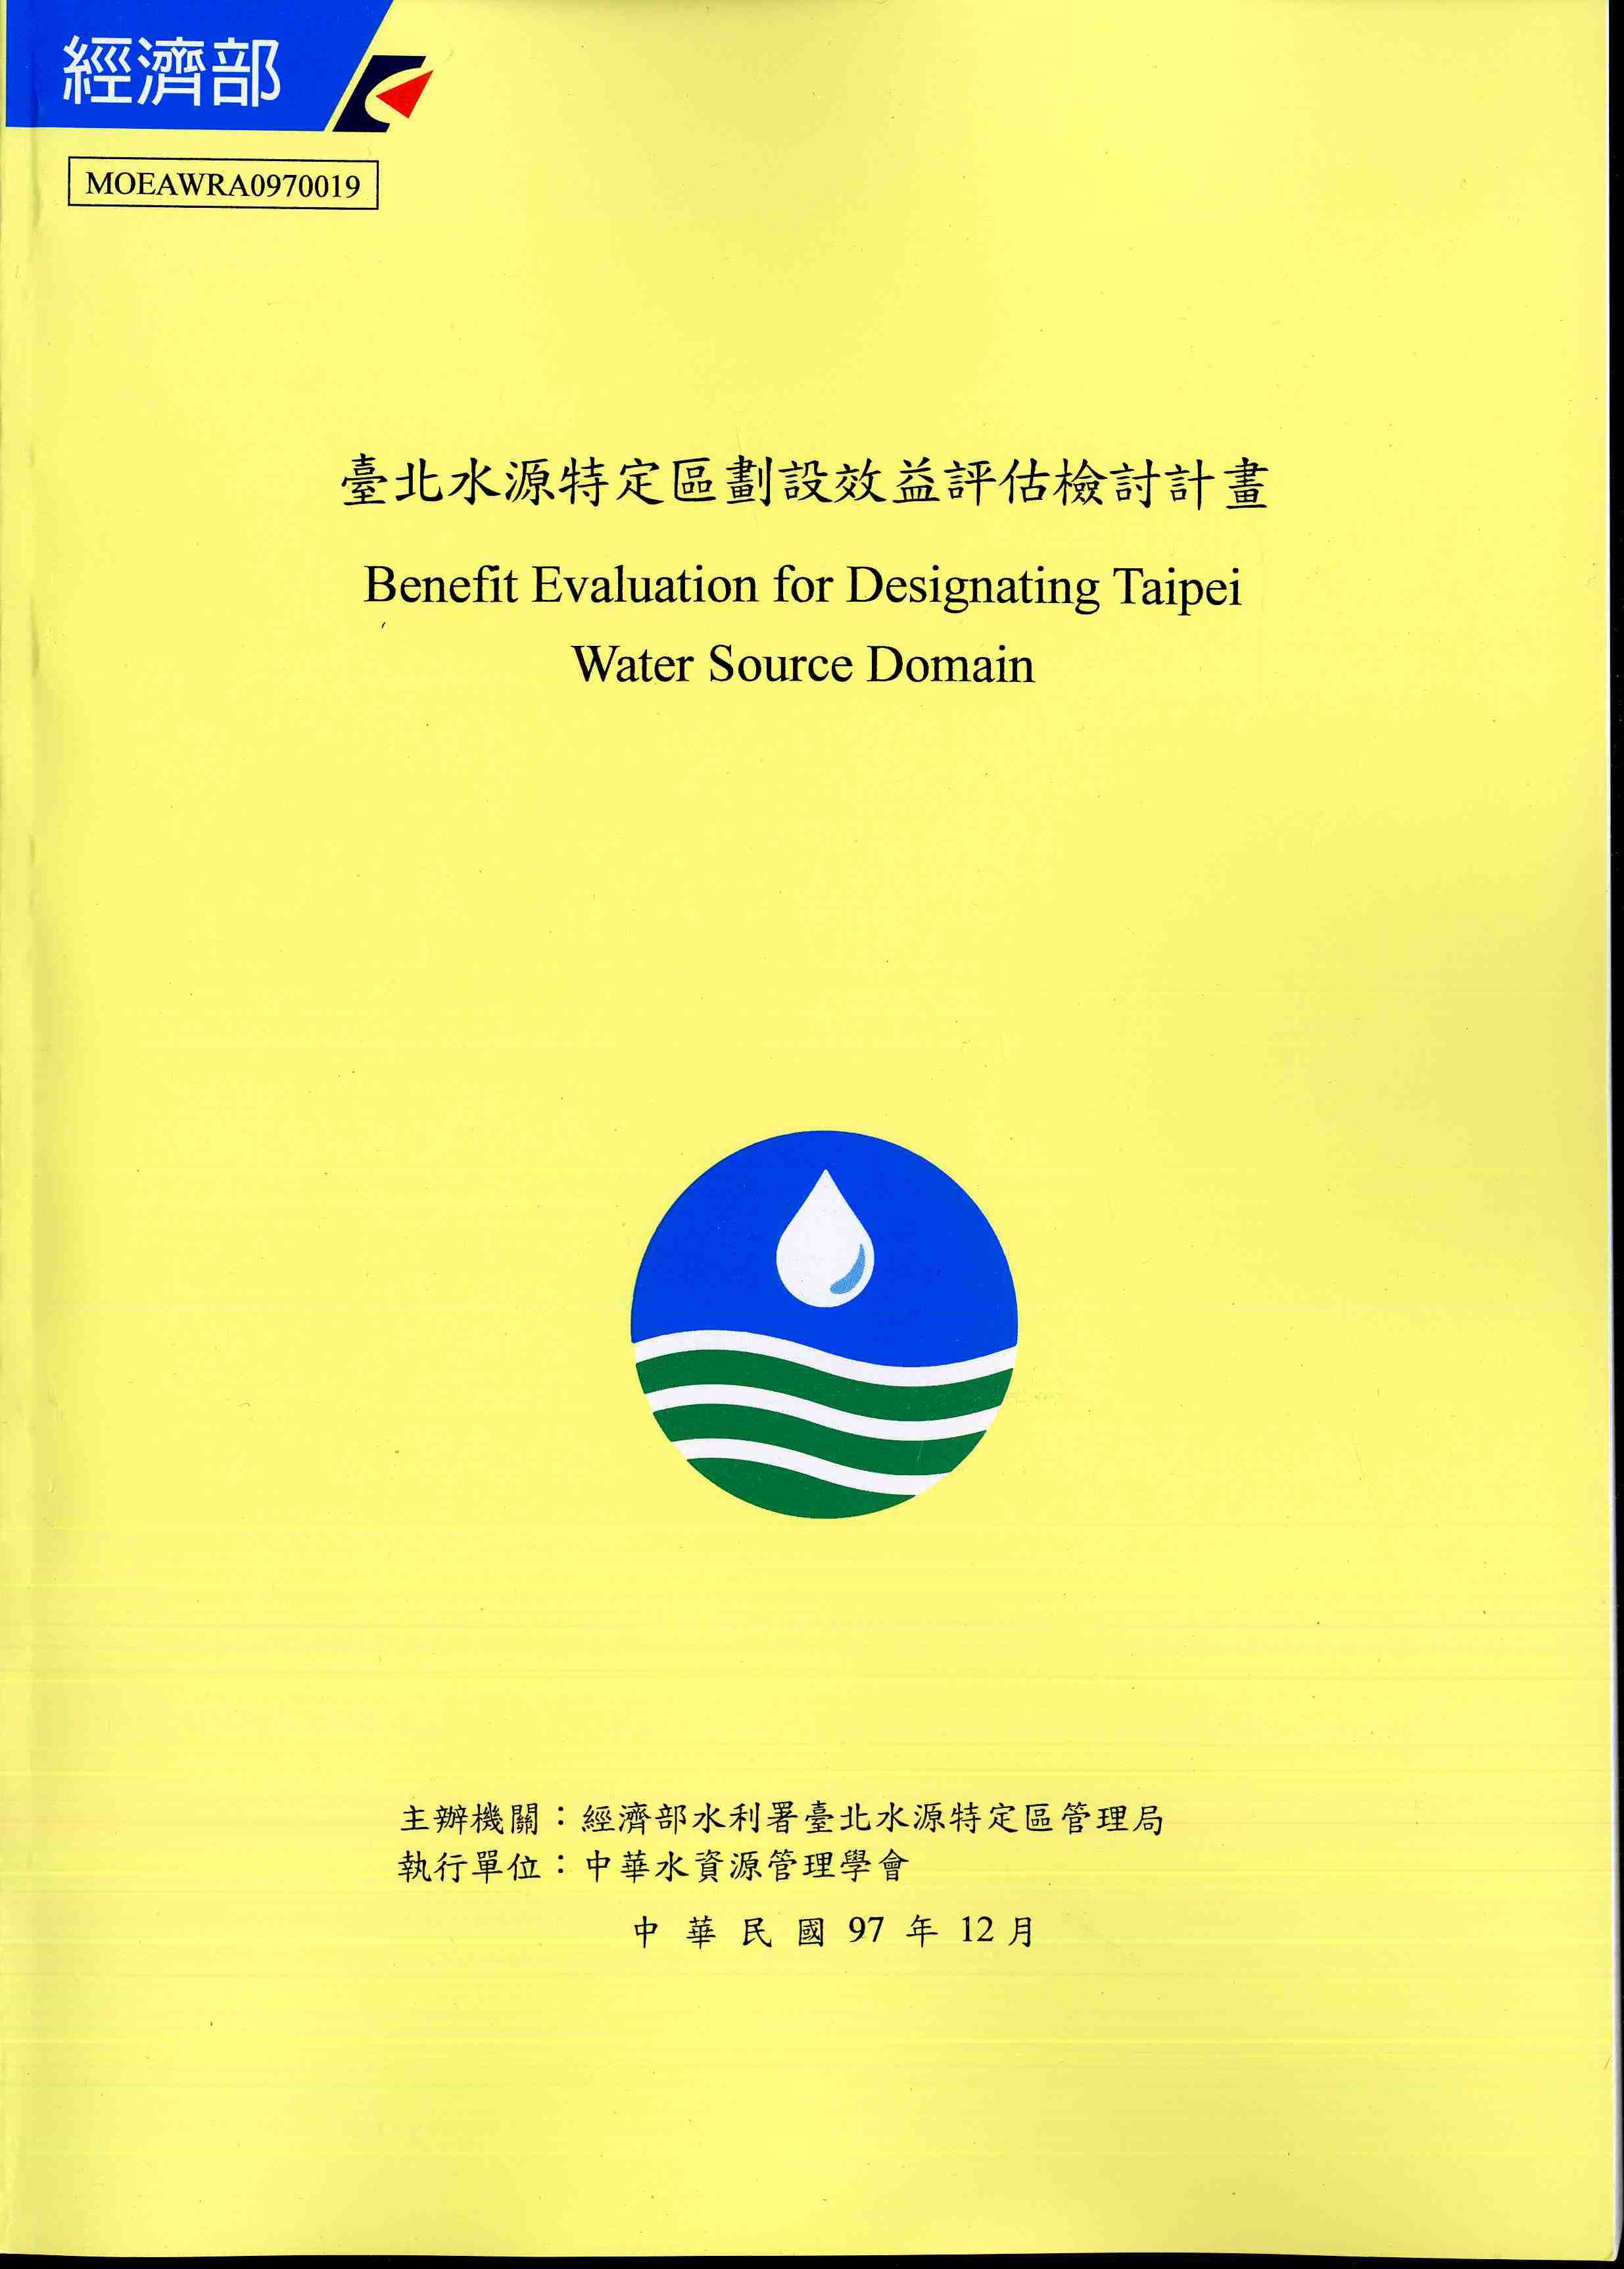 臺北水源特定區劃設效益評估檢討計畫